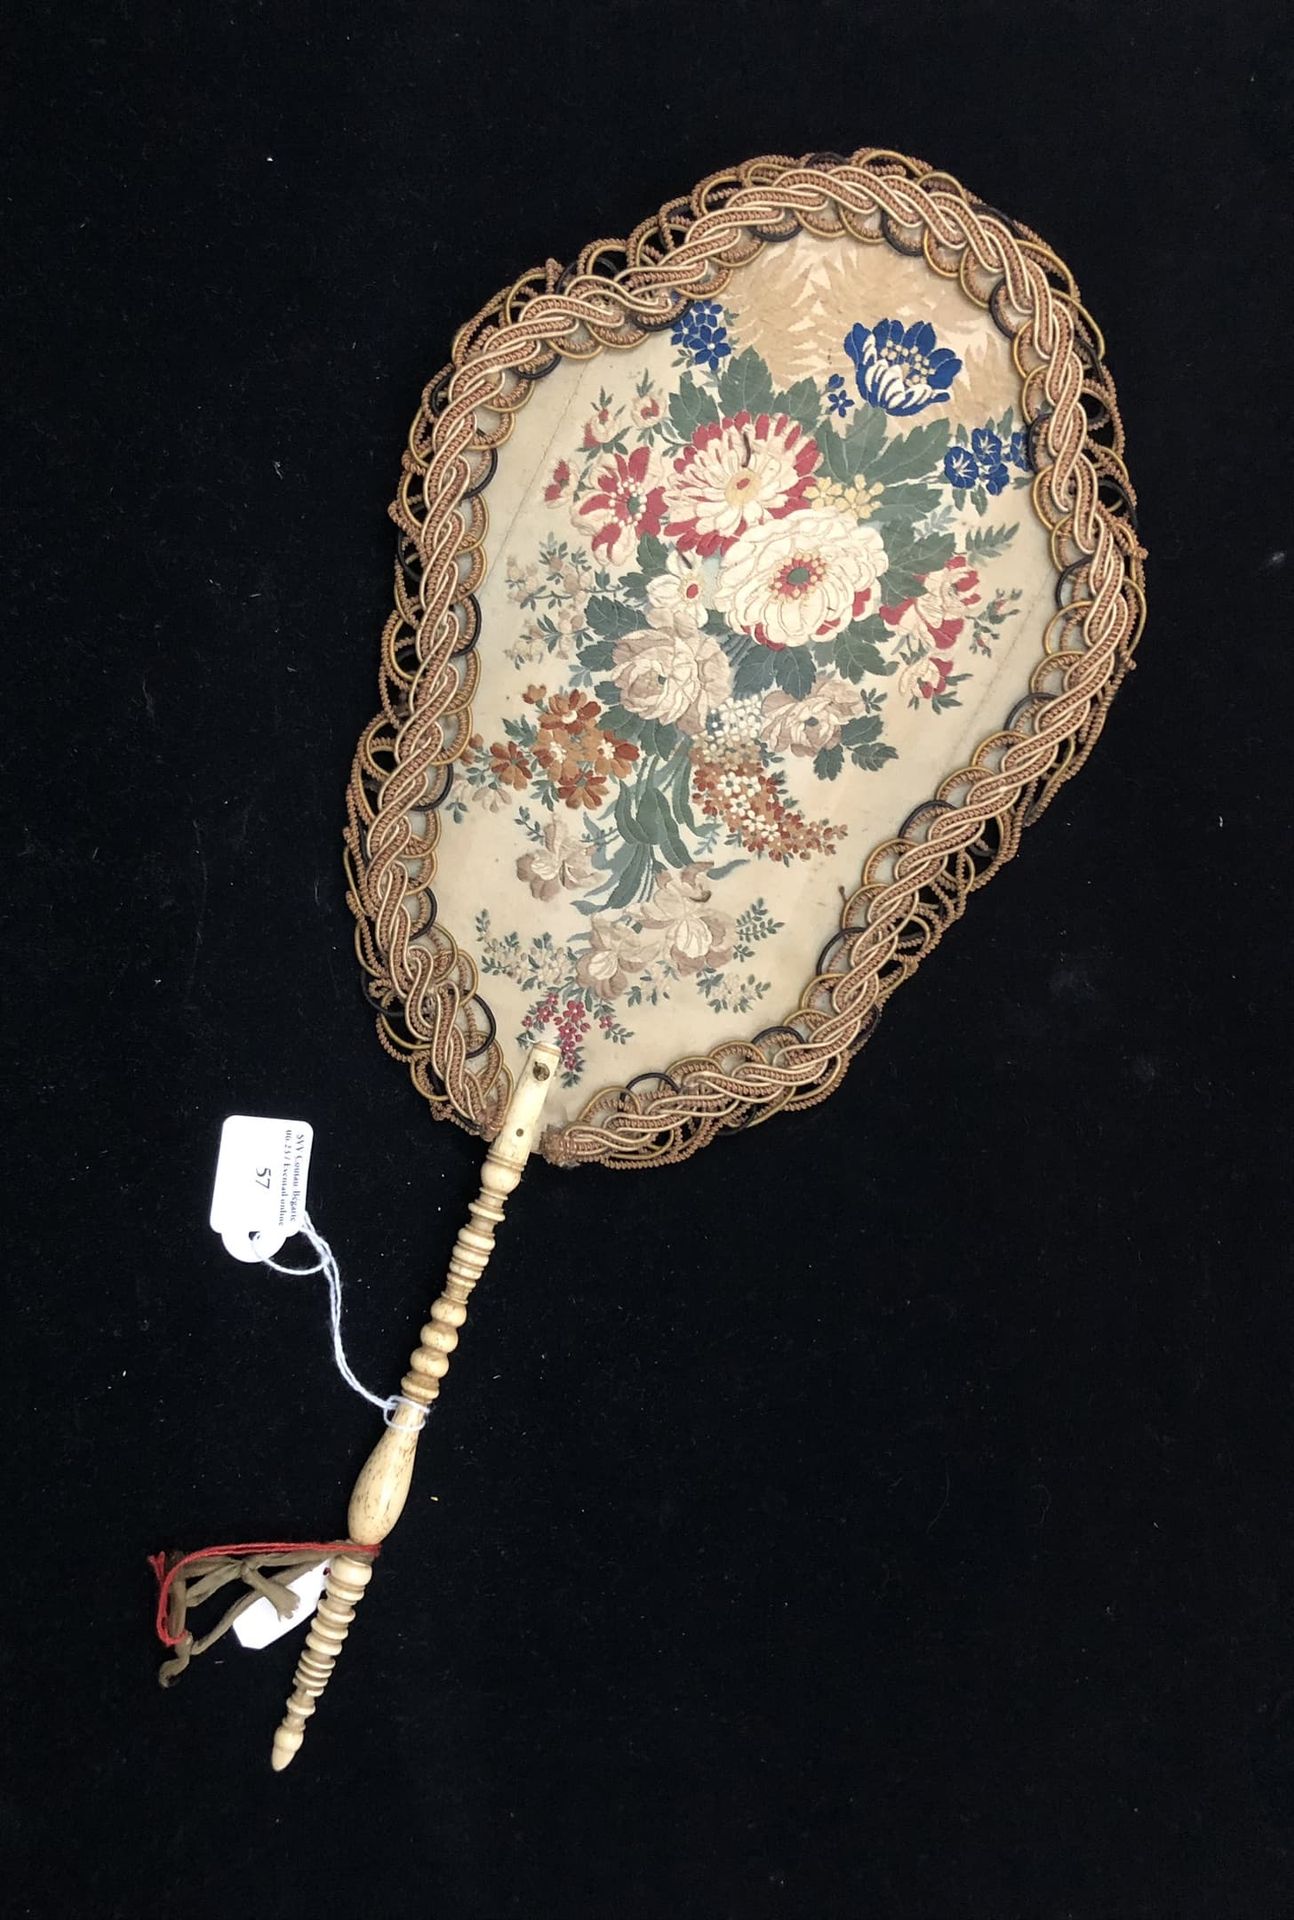 Null 花束，欧洲，约1880年
锦缎丝绸的手工屏风，两面装饰着丰富的花束。两侧有辫子。
车削的骨质手柄。
高约42厘米